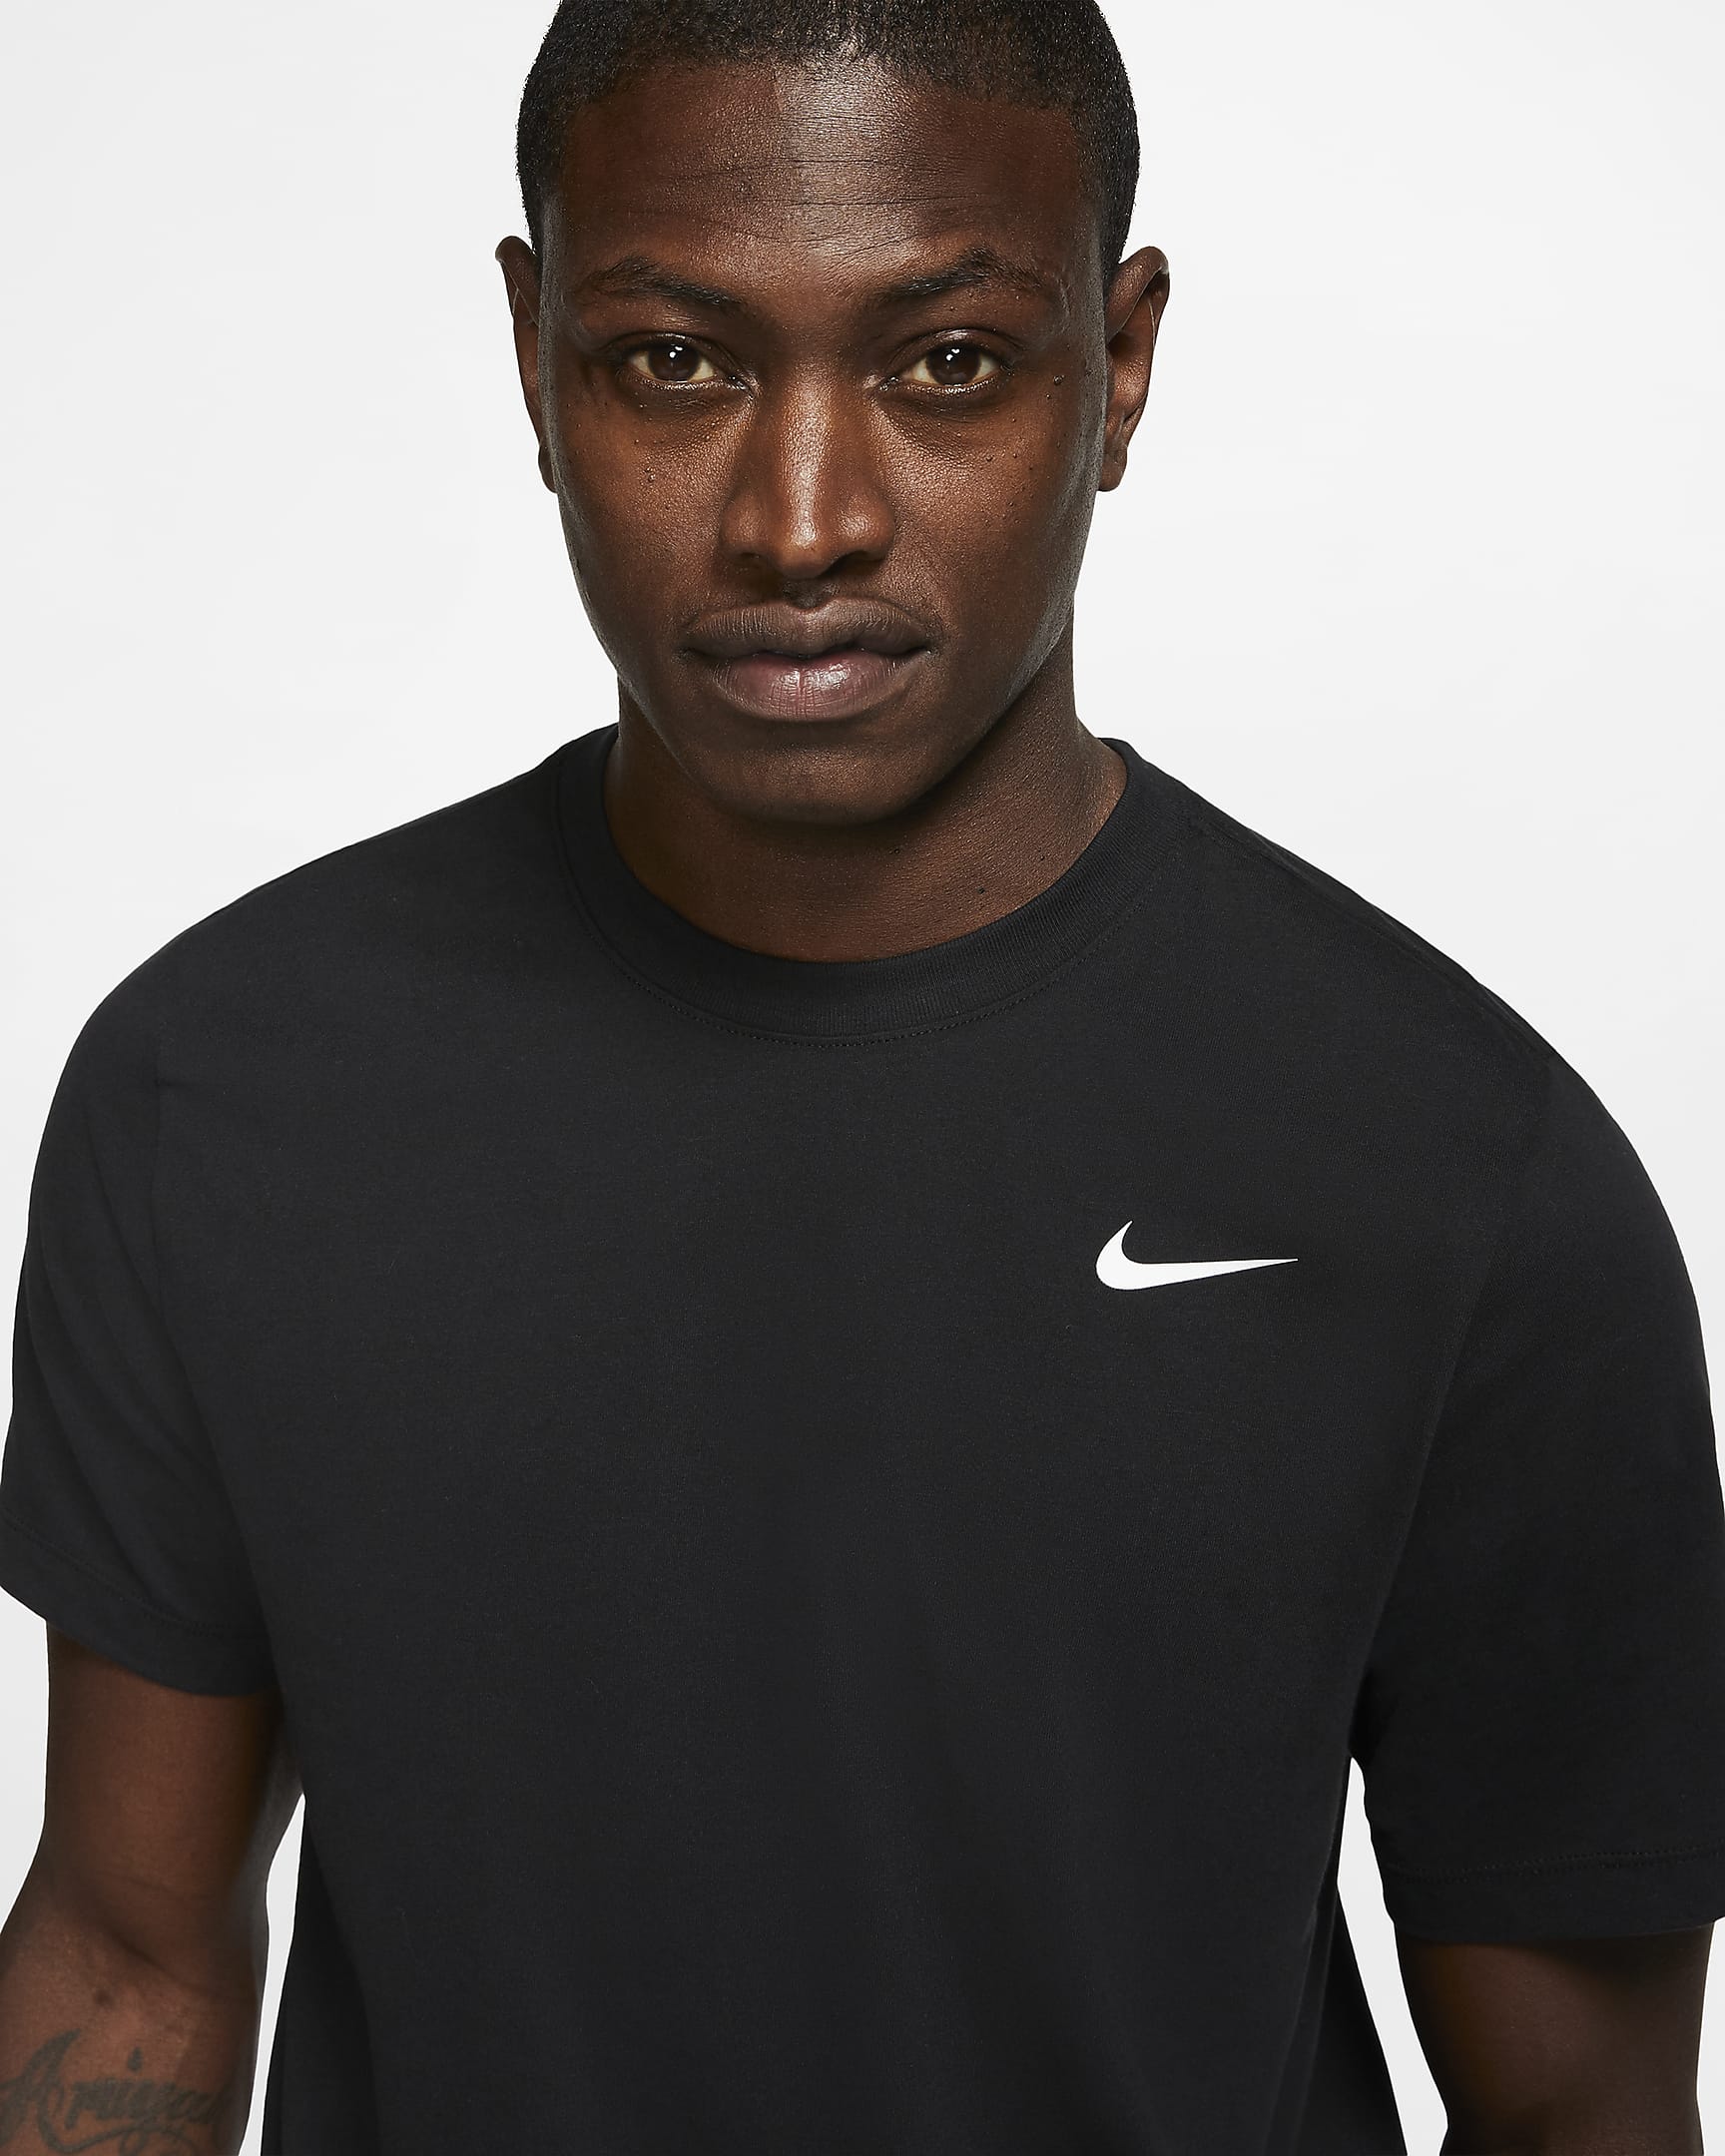 Nike Men's Dri-Fit Training T-Shirt - Black